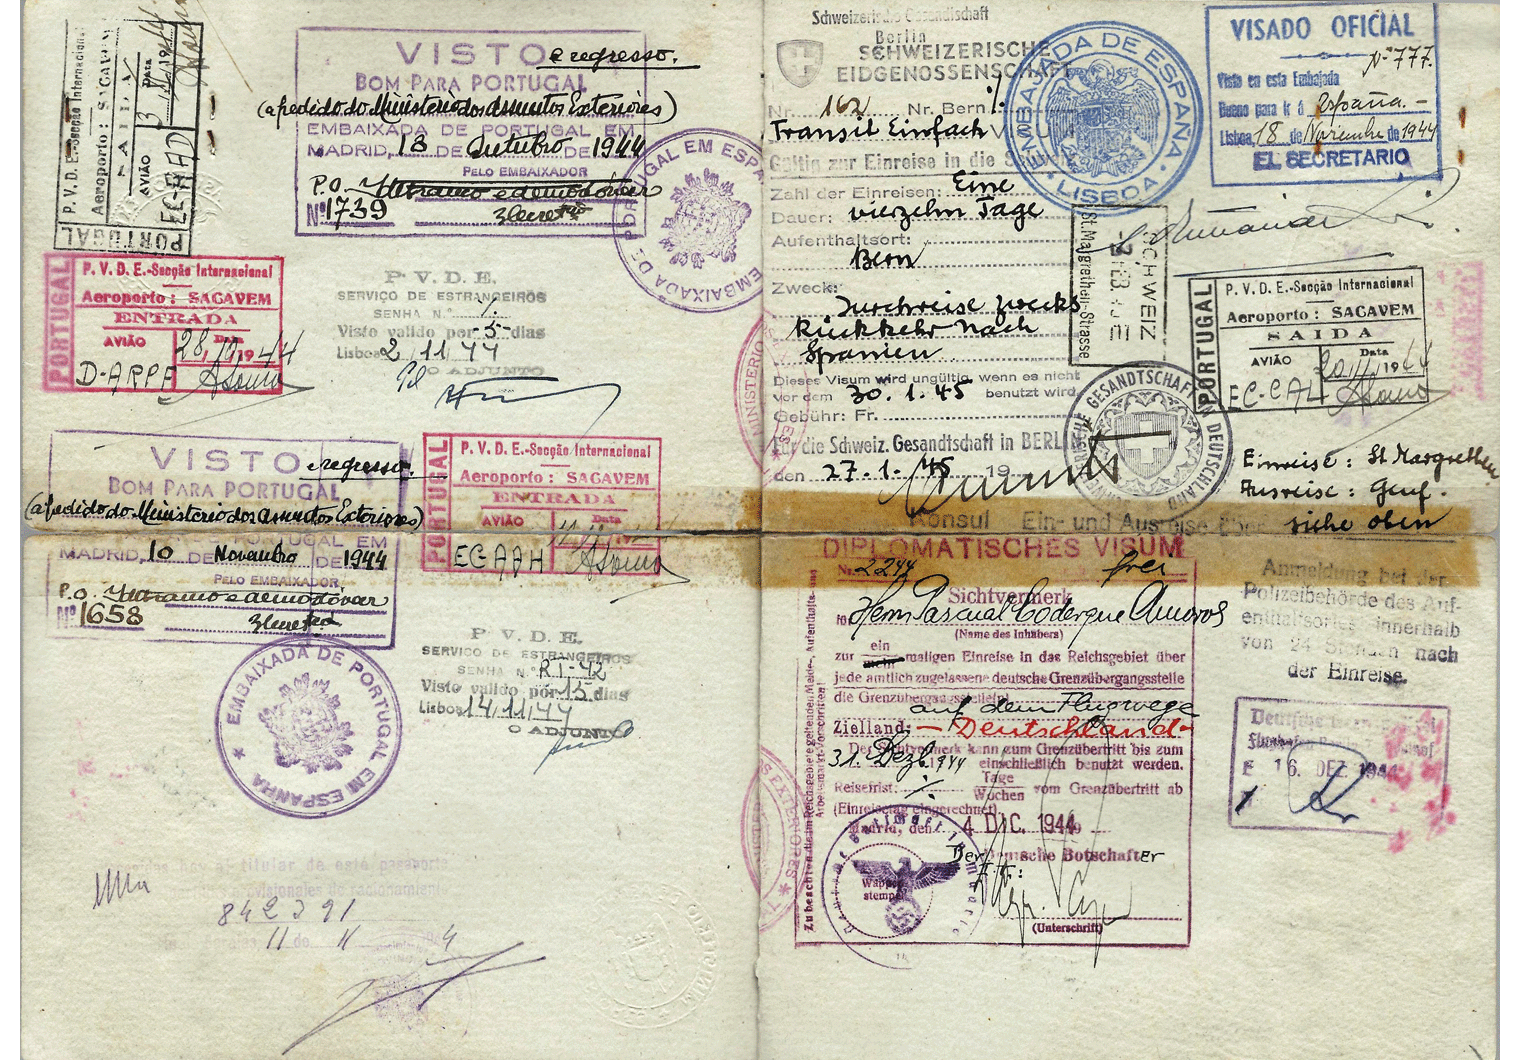 WW2 German diplomatic visa